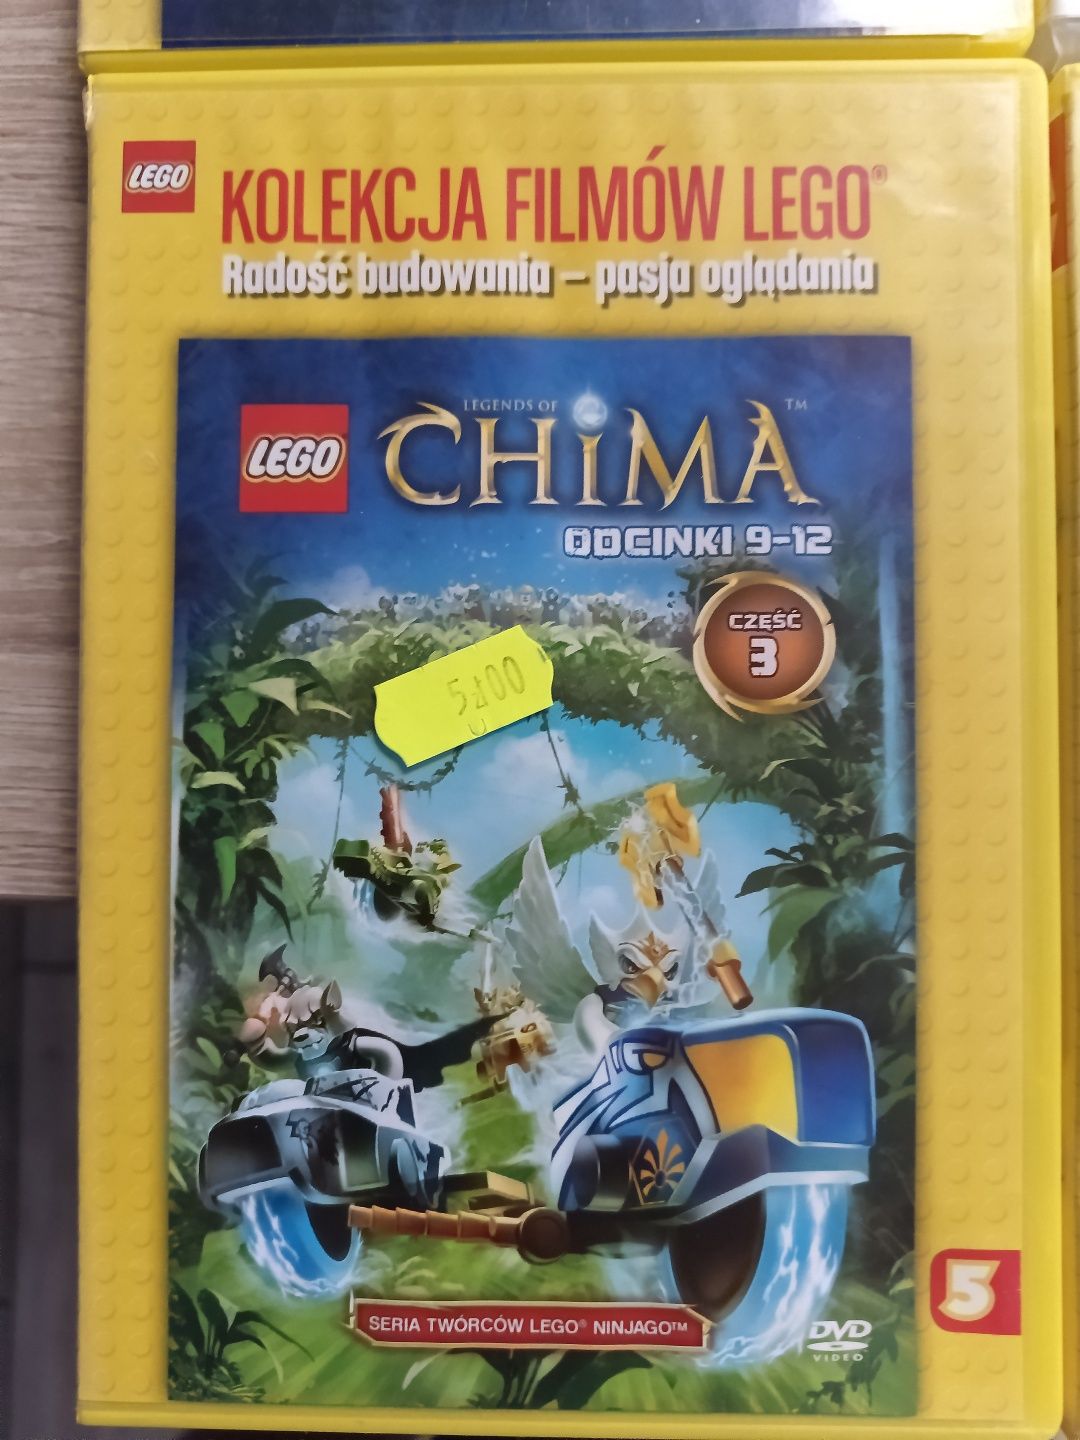 Kolekcja filmów LEGO Chima od 3 do 6. Polecam dvd.